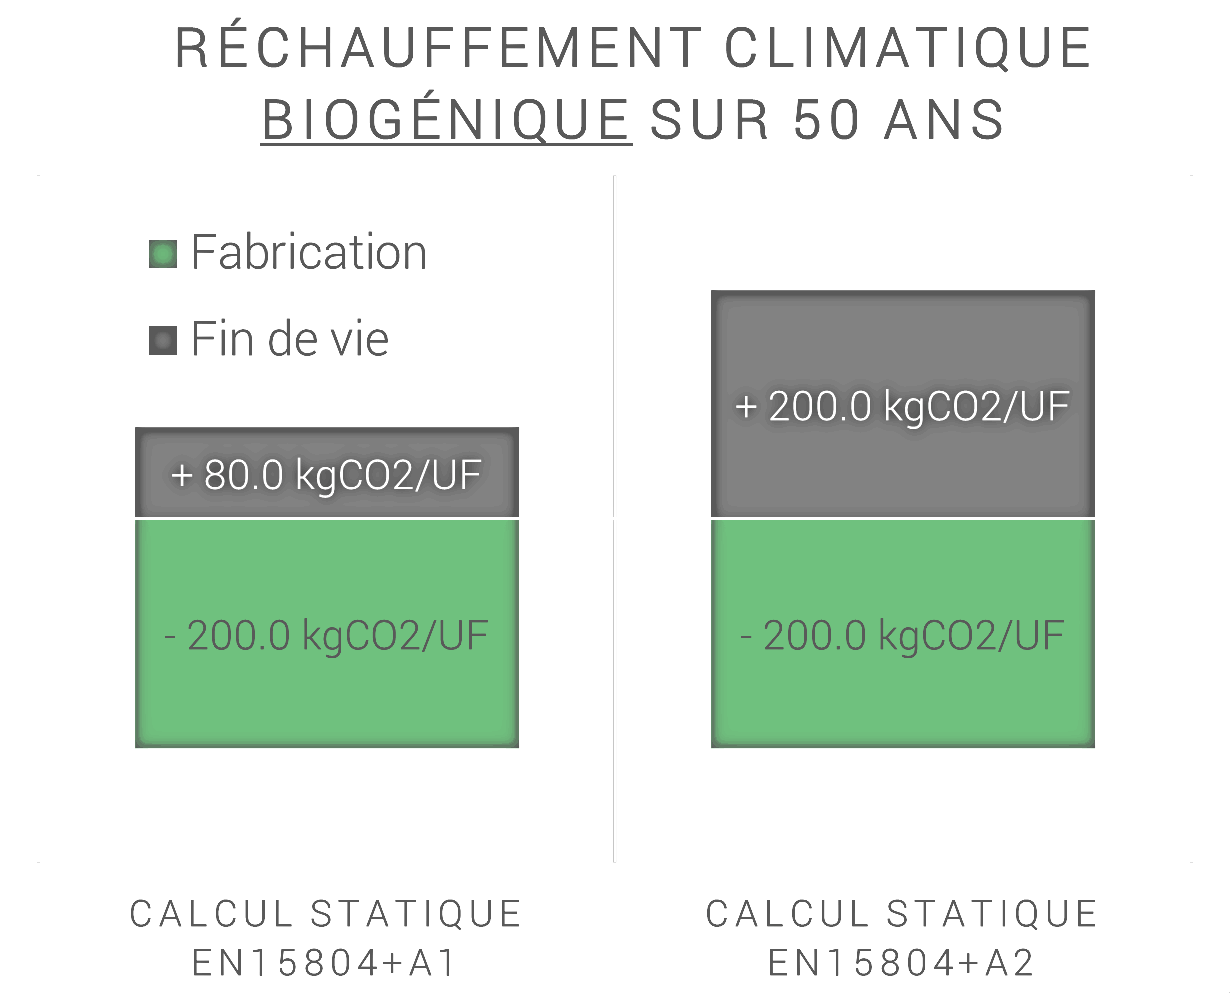 Le principe du cycle neutre pour le carbone biogénique se traduit par un bilan nul pour l’indicateur de réchauffement climatique biogénique (nouvel indicateur) en statique sur 50 ans.
L’exemple ci-contre montre une différence significative selon l’amendement A1 ou A2 pour les produits biosourcés (qui stockent du carbone). Cet impact est atténué en calcul dynamique (pondération en fin de vie).